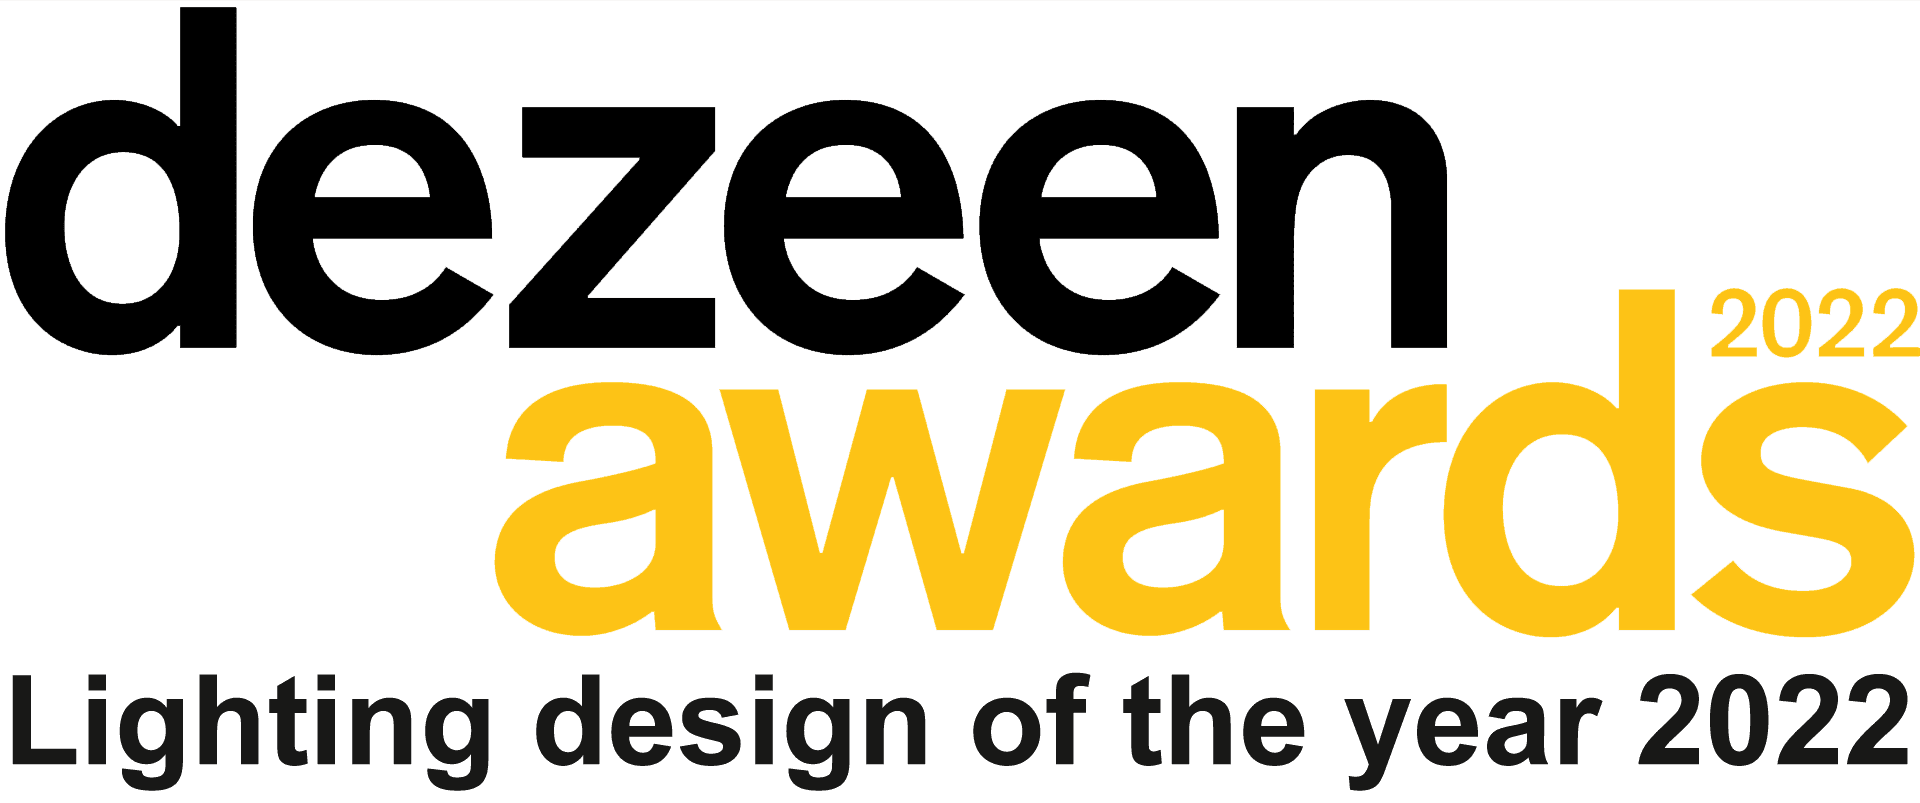 dezeen awards - Lighting design of the year 2022